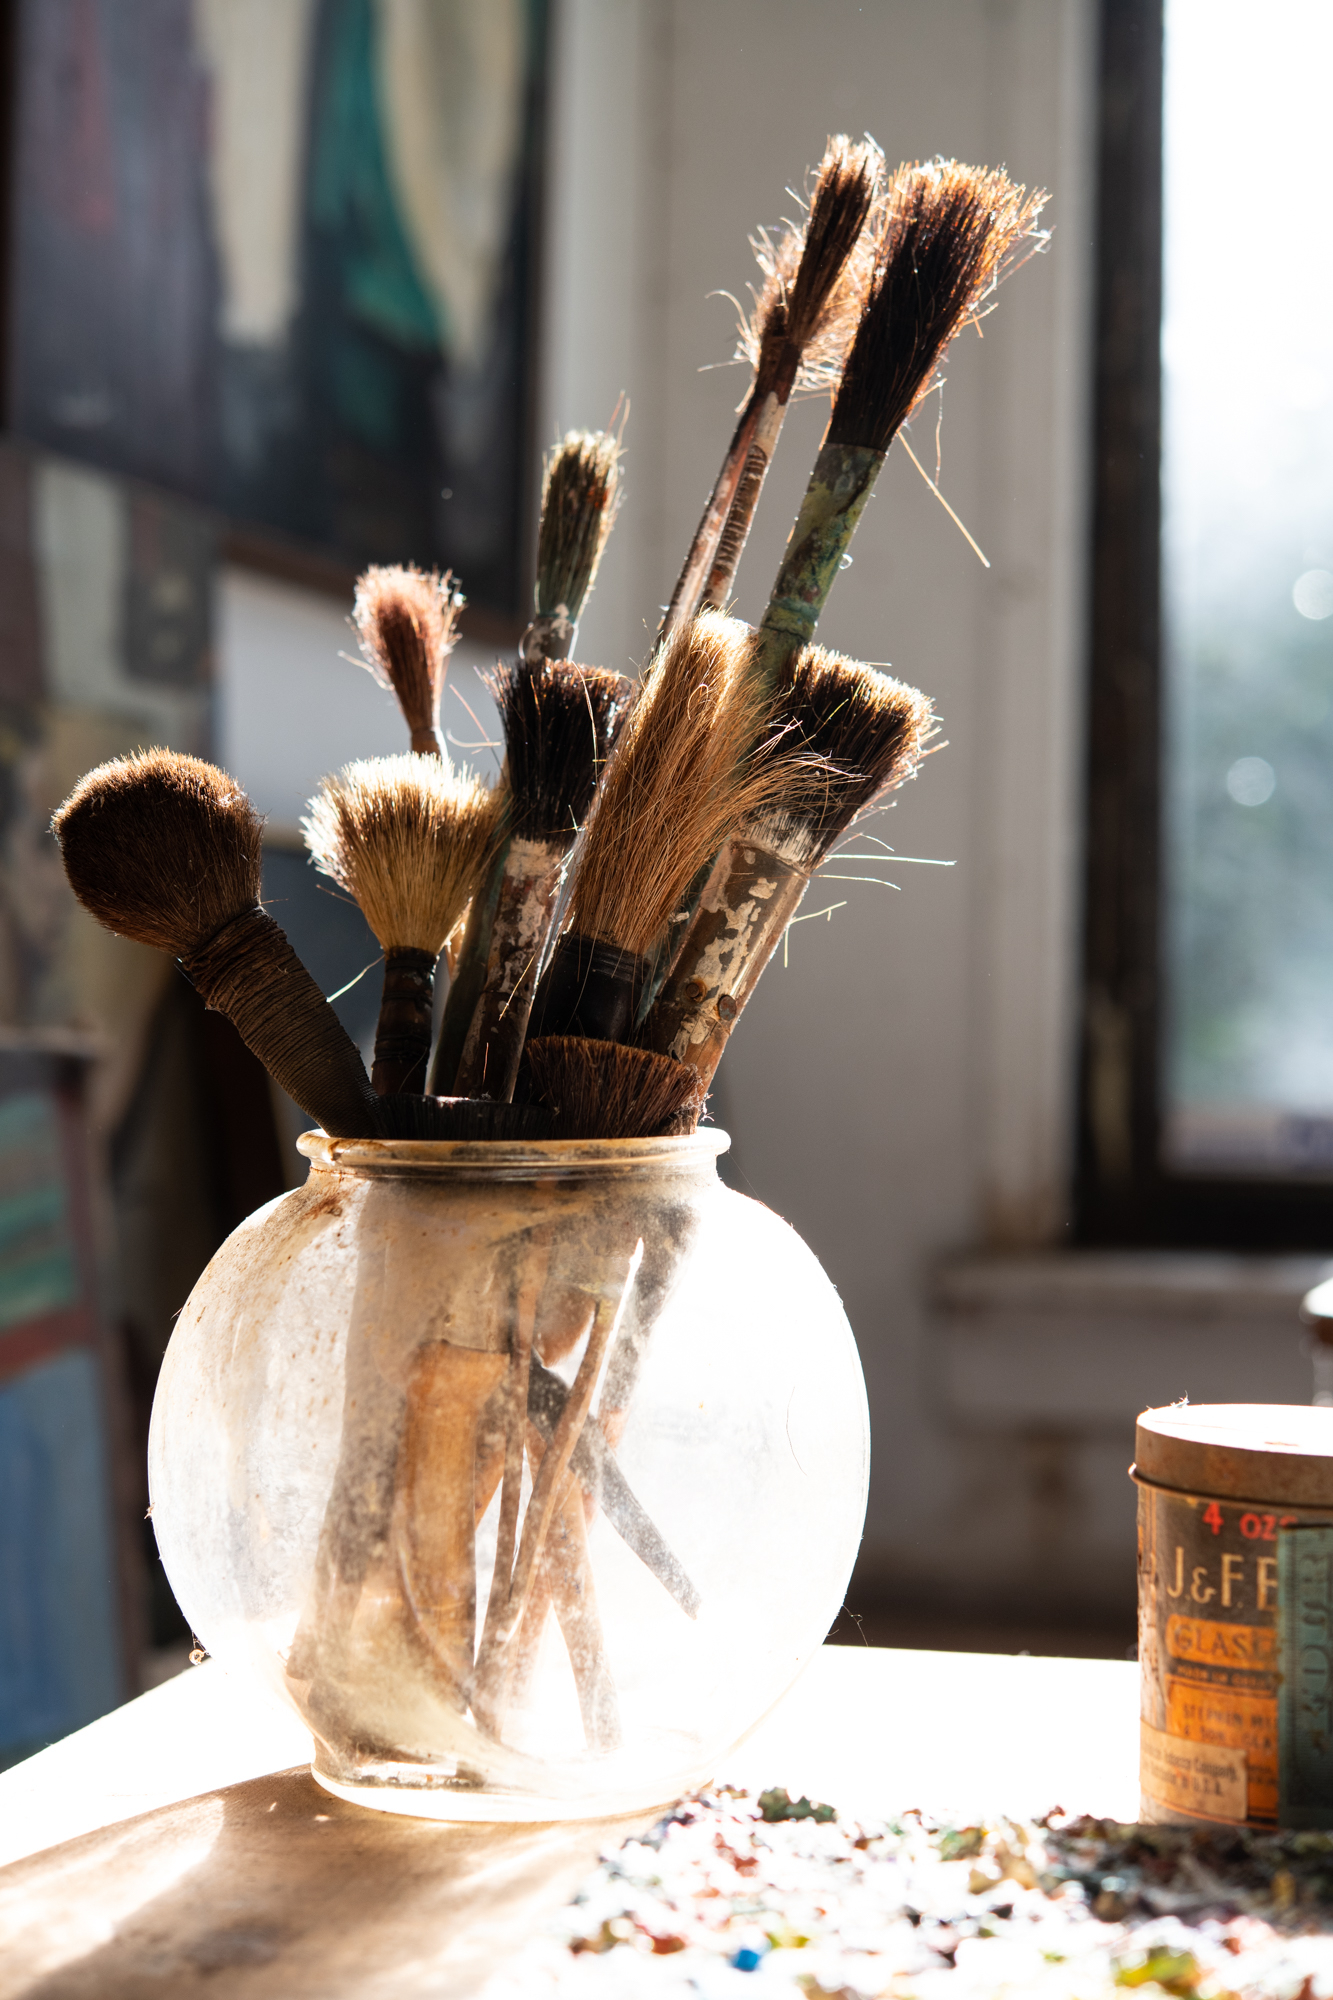 worn paintbrushes jar